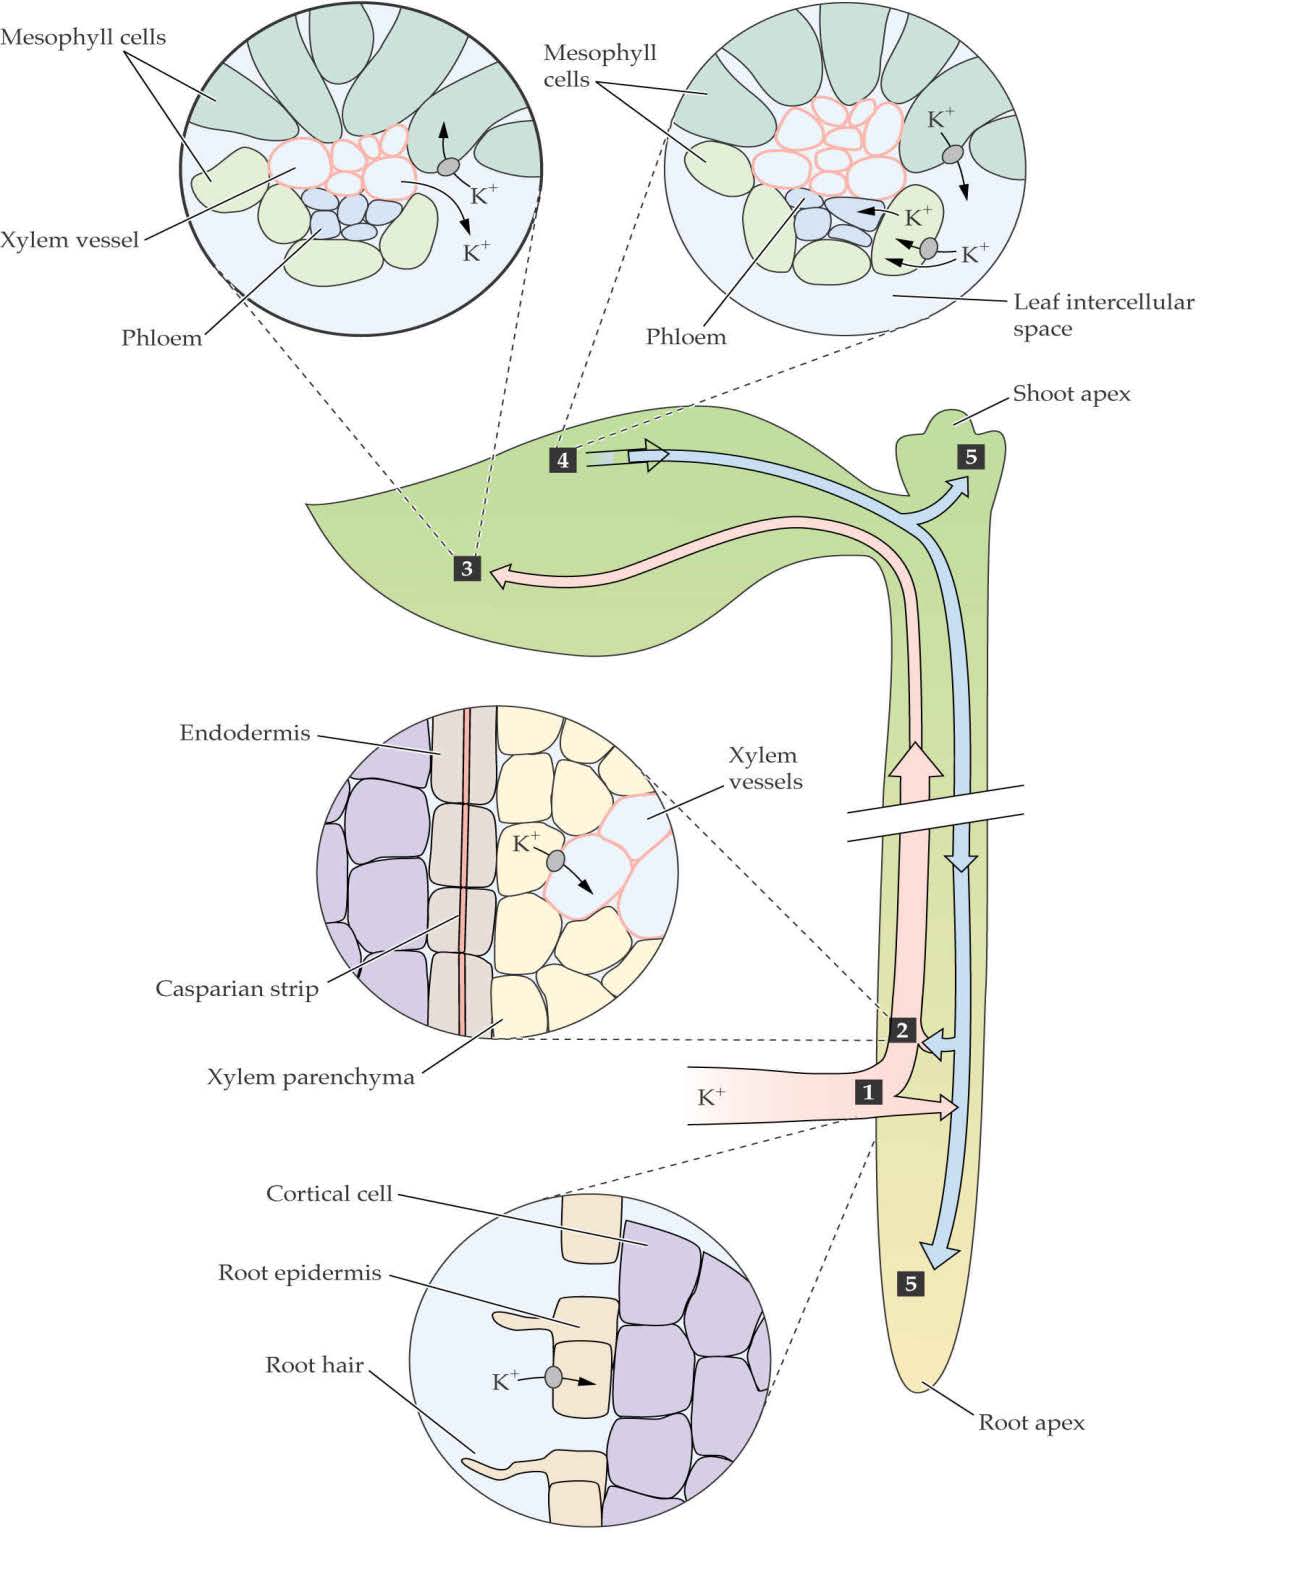 mezofil sejtek xilém floém mezofil sejtek floém intercelluláris tér A tápionok útja a növényekben: